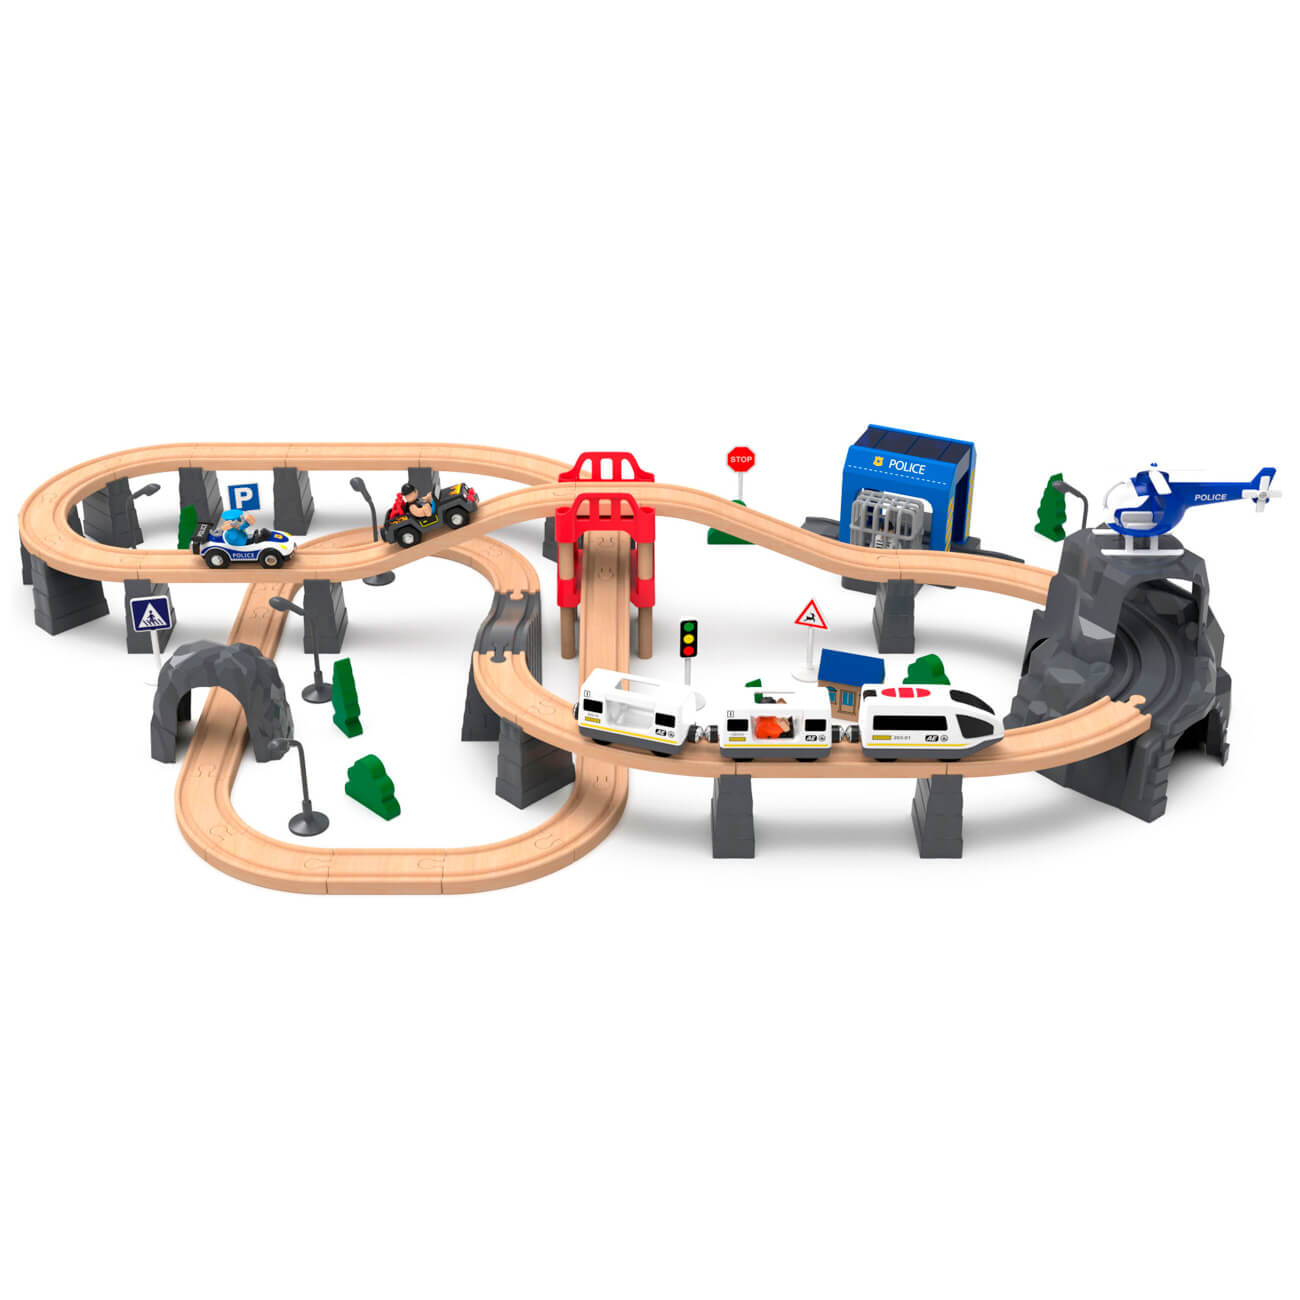 Железная дорога игрушечная, 98 см, дерево/пластик, Электропоезд, Game rail железная логика лучшие игры с роботами